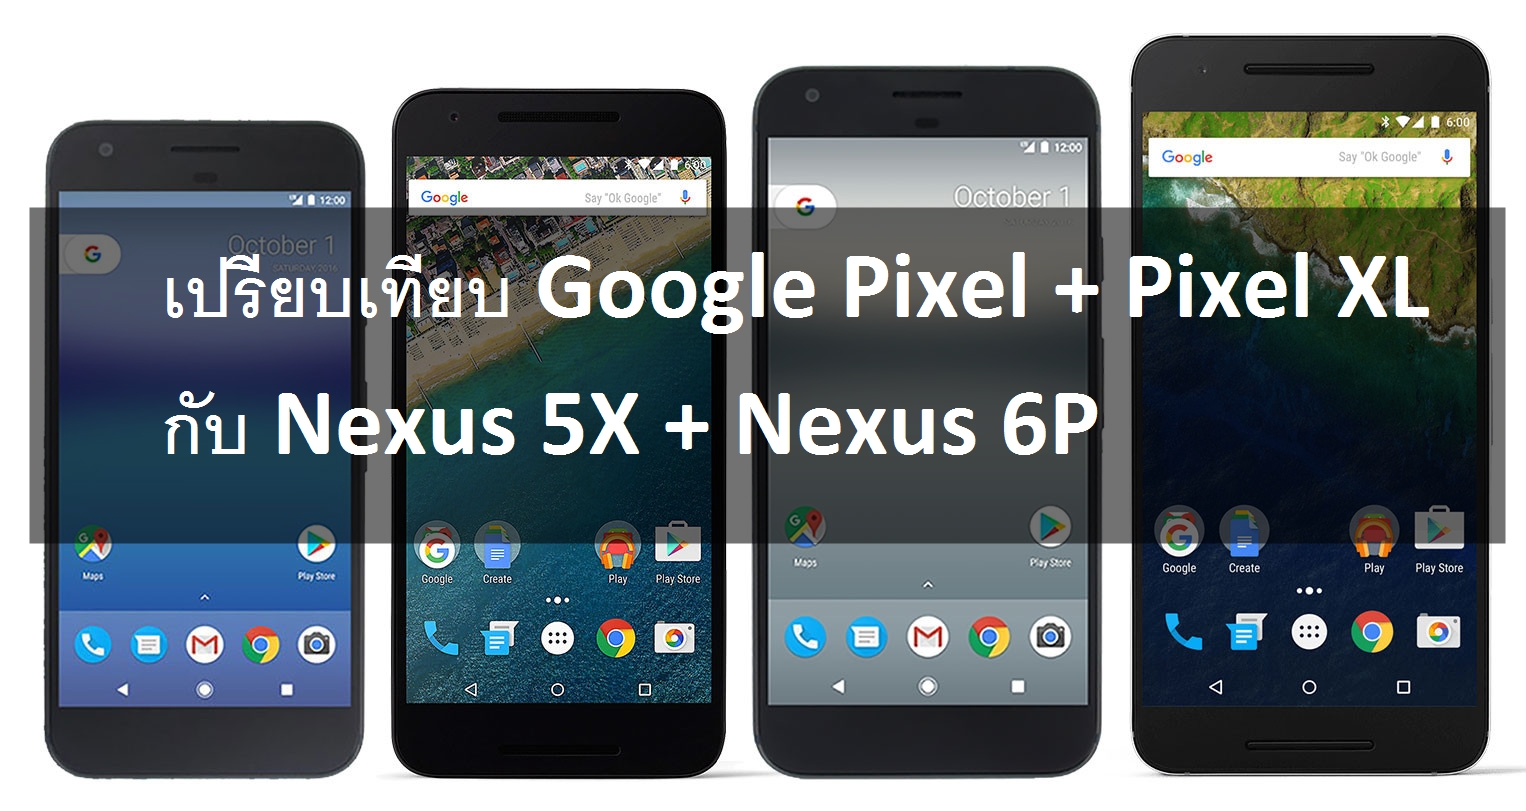 pixels nexus spec | Nexus | เปรียบเทียบ Google Pixel + Pixel XL กับ Nexus 5X + Nexus 6P ทั้งสเปคและเทียบหน้าจอชัด ๆ